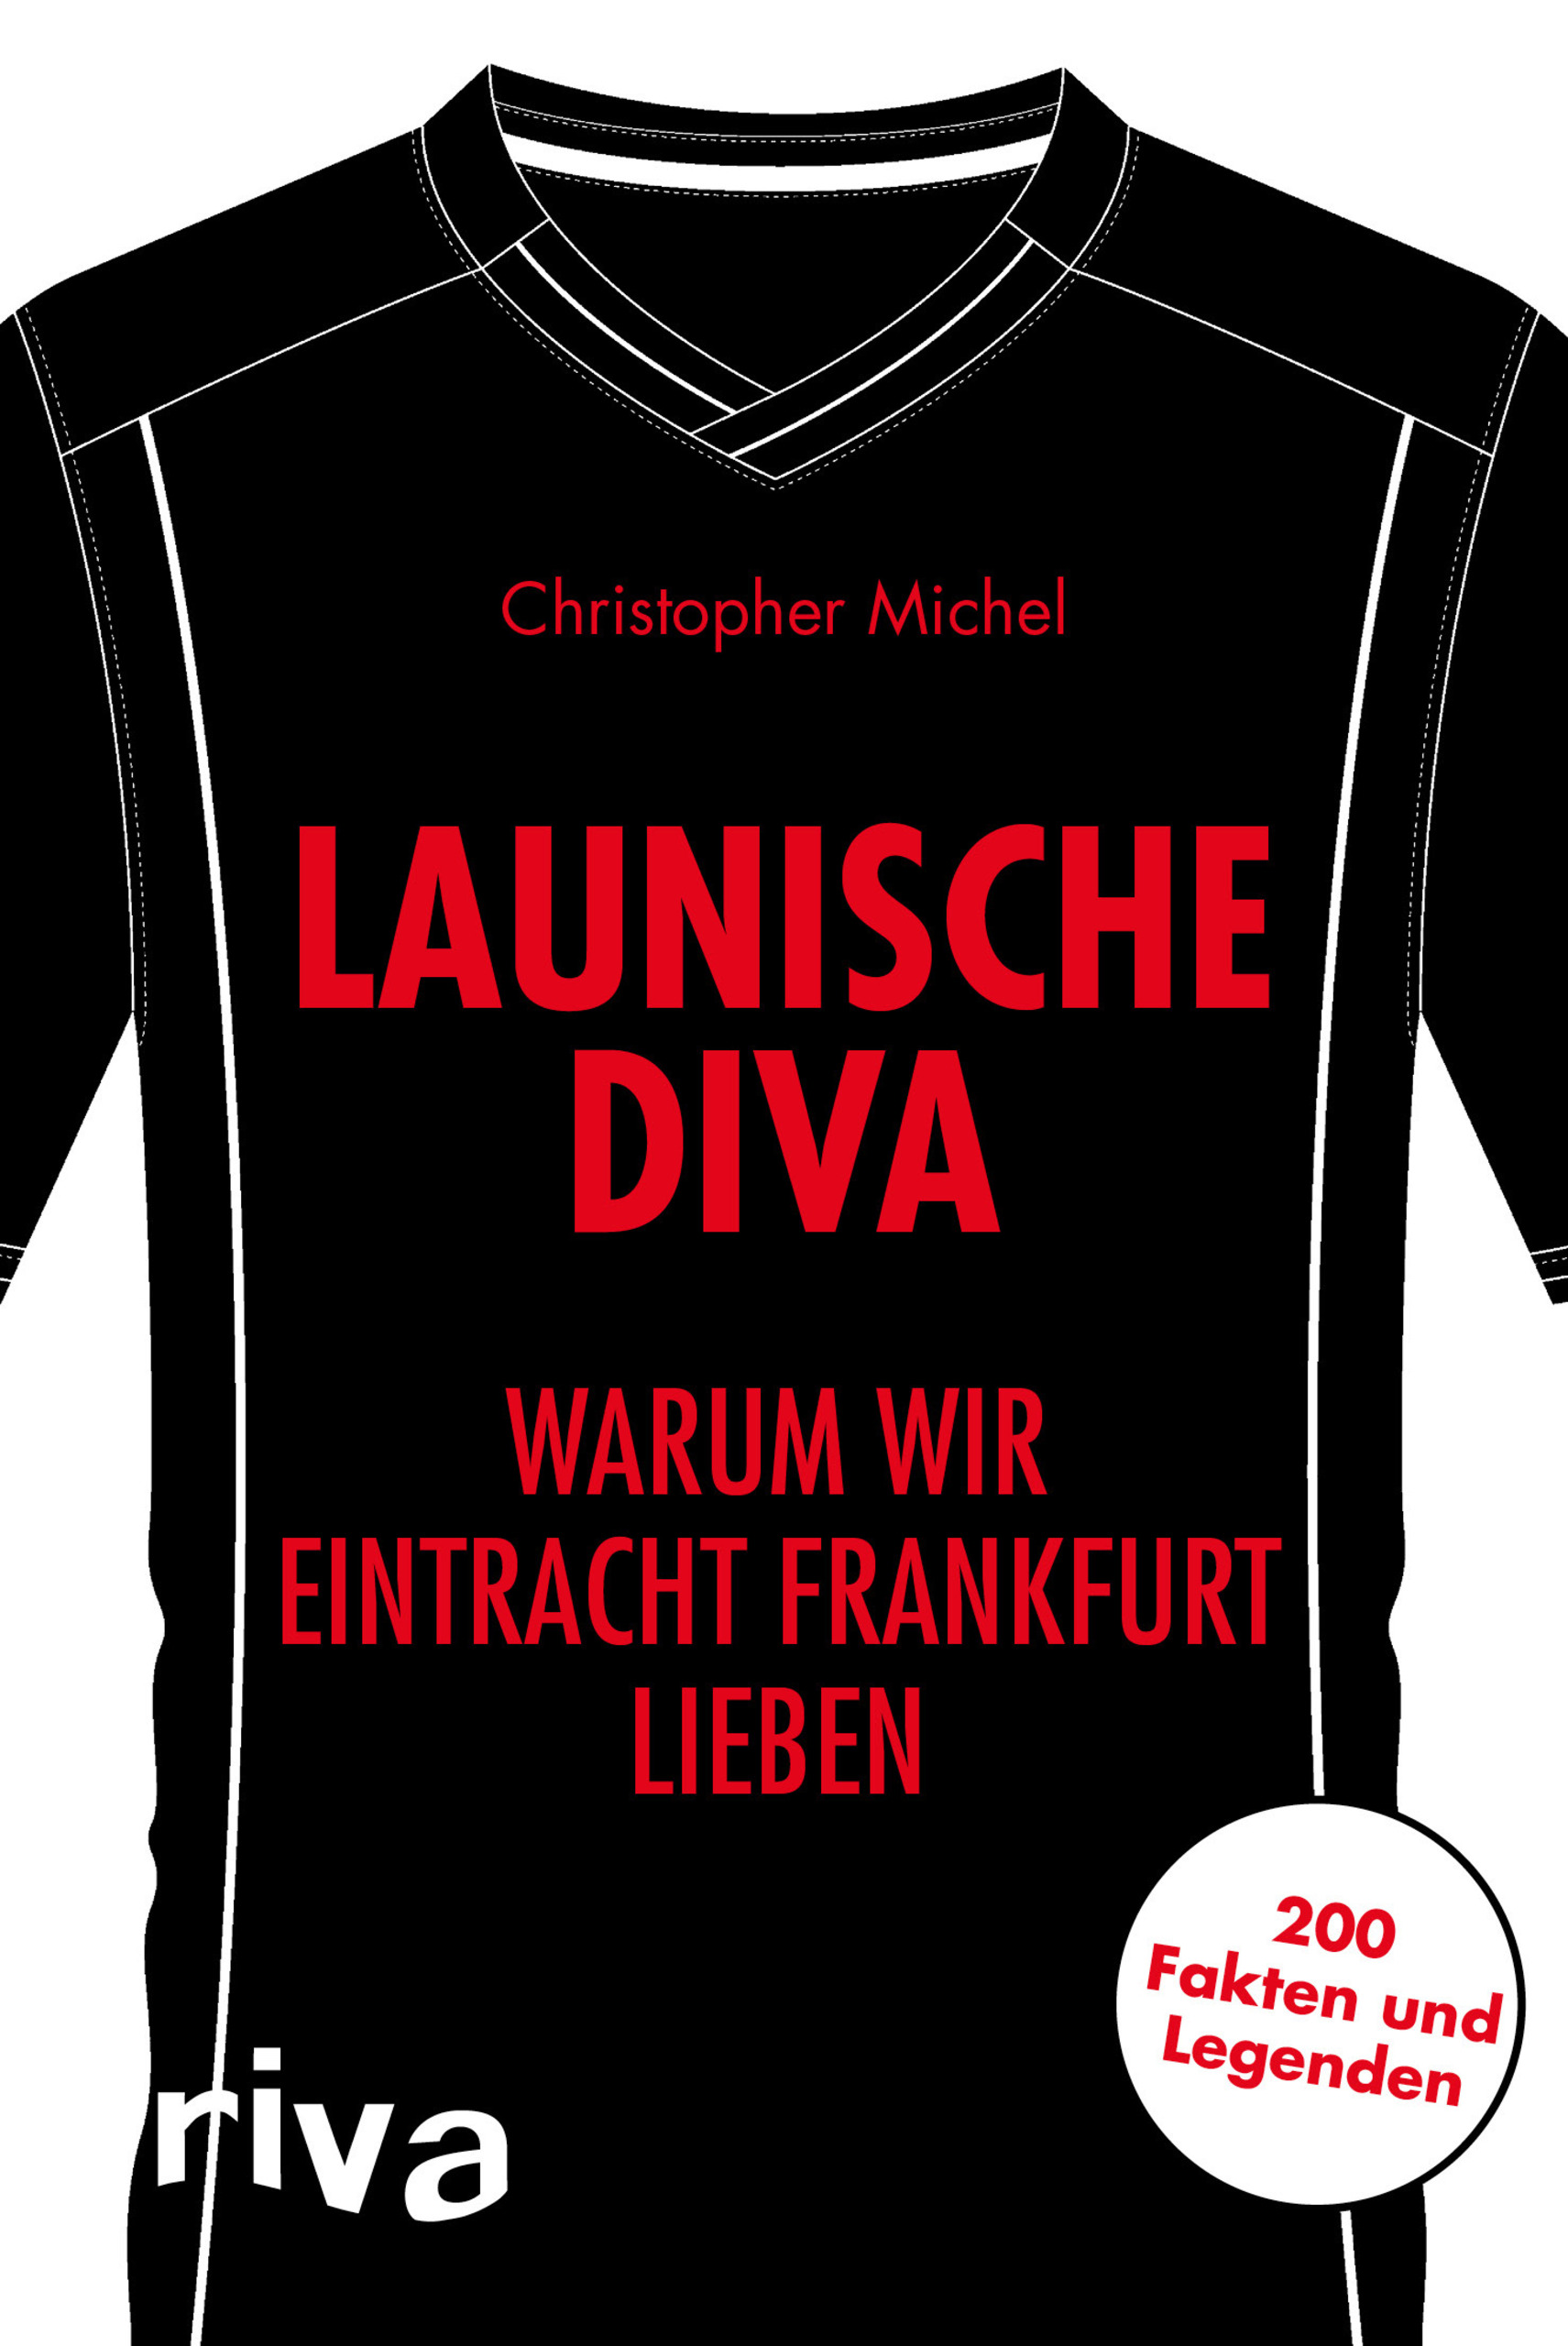 Launische Diva Warum Wir Eintracht Frankfurt Lieben 200 Fakten Und Legenden